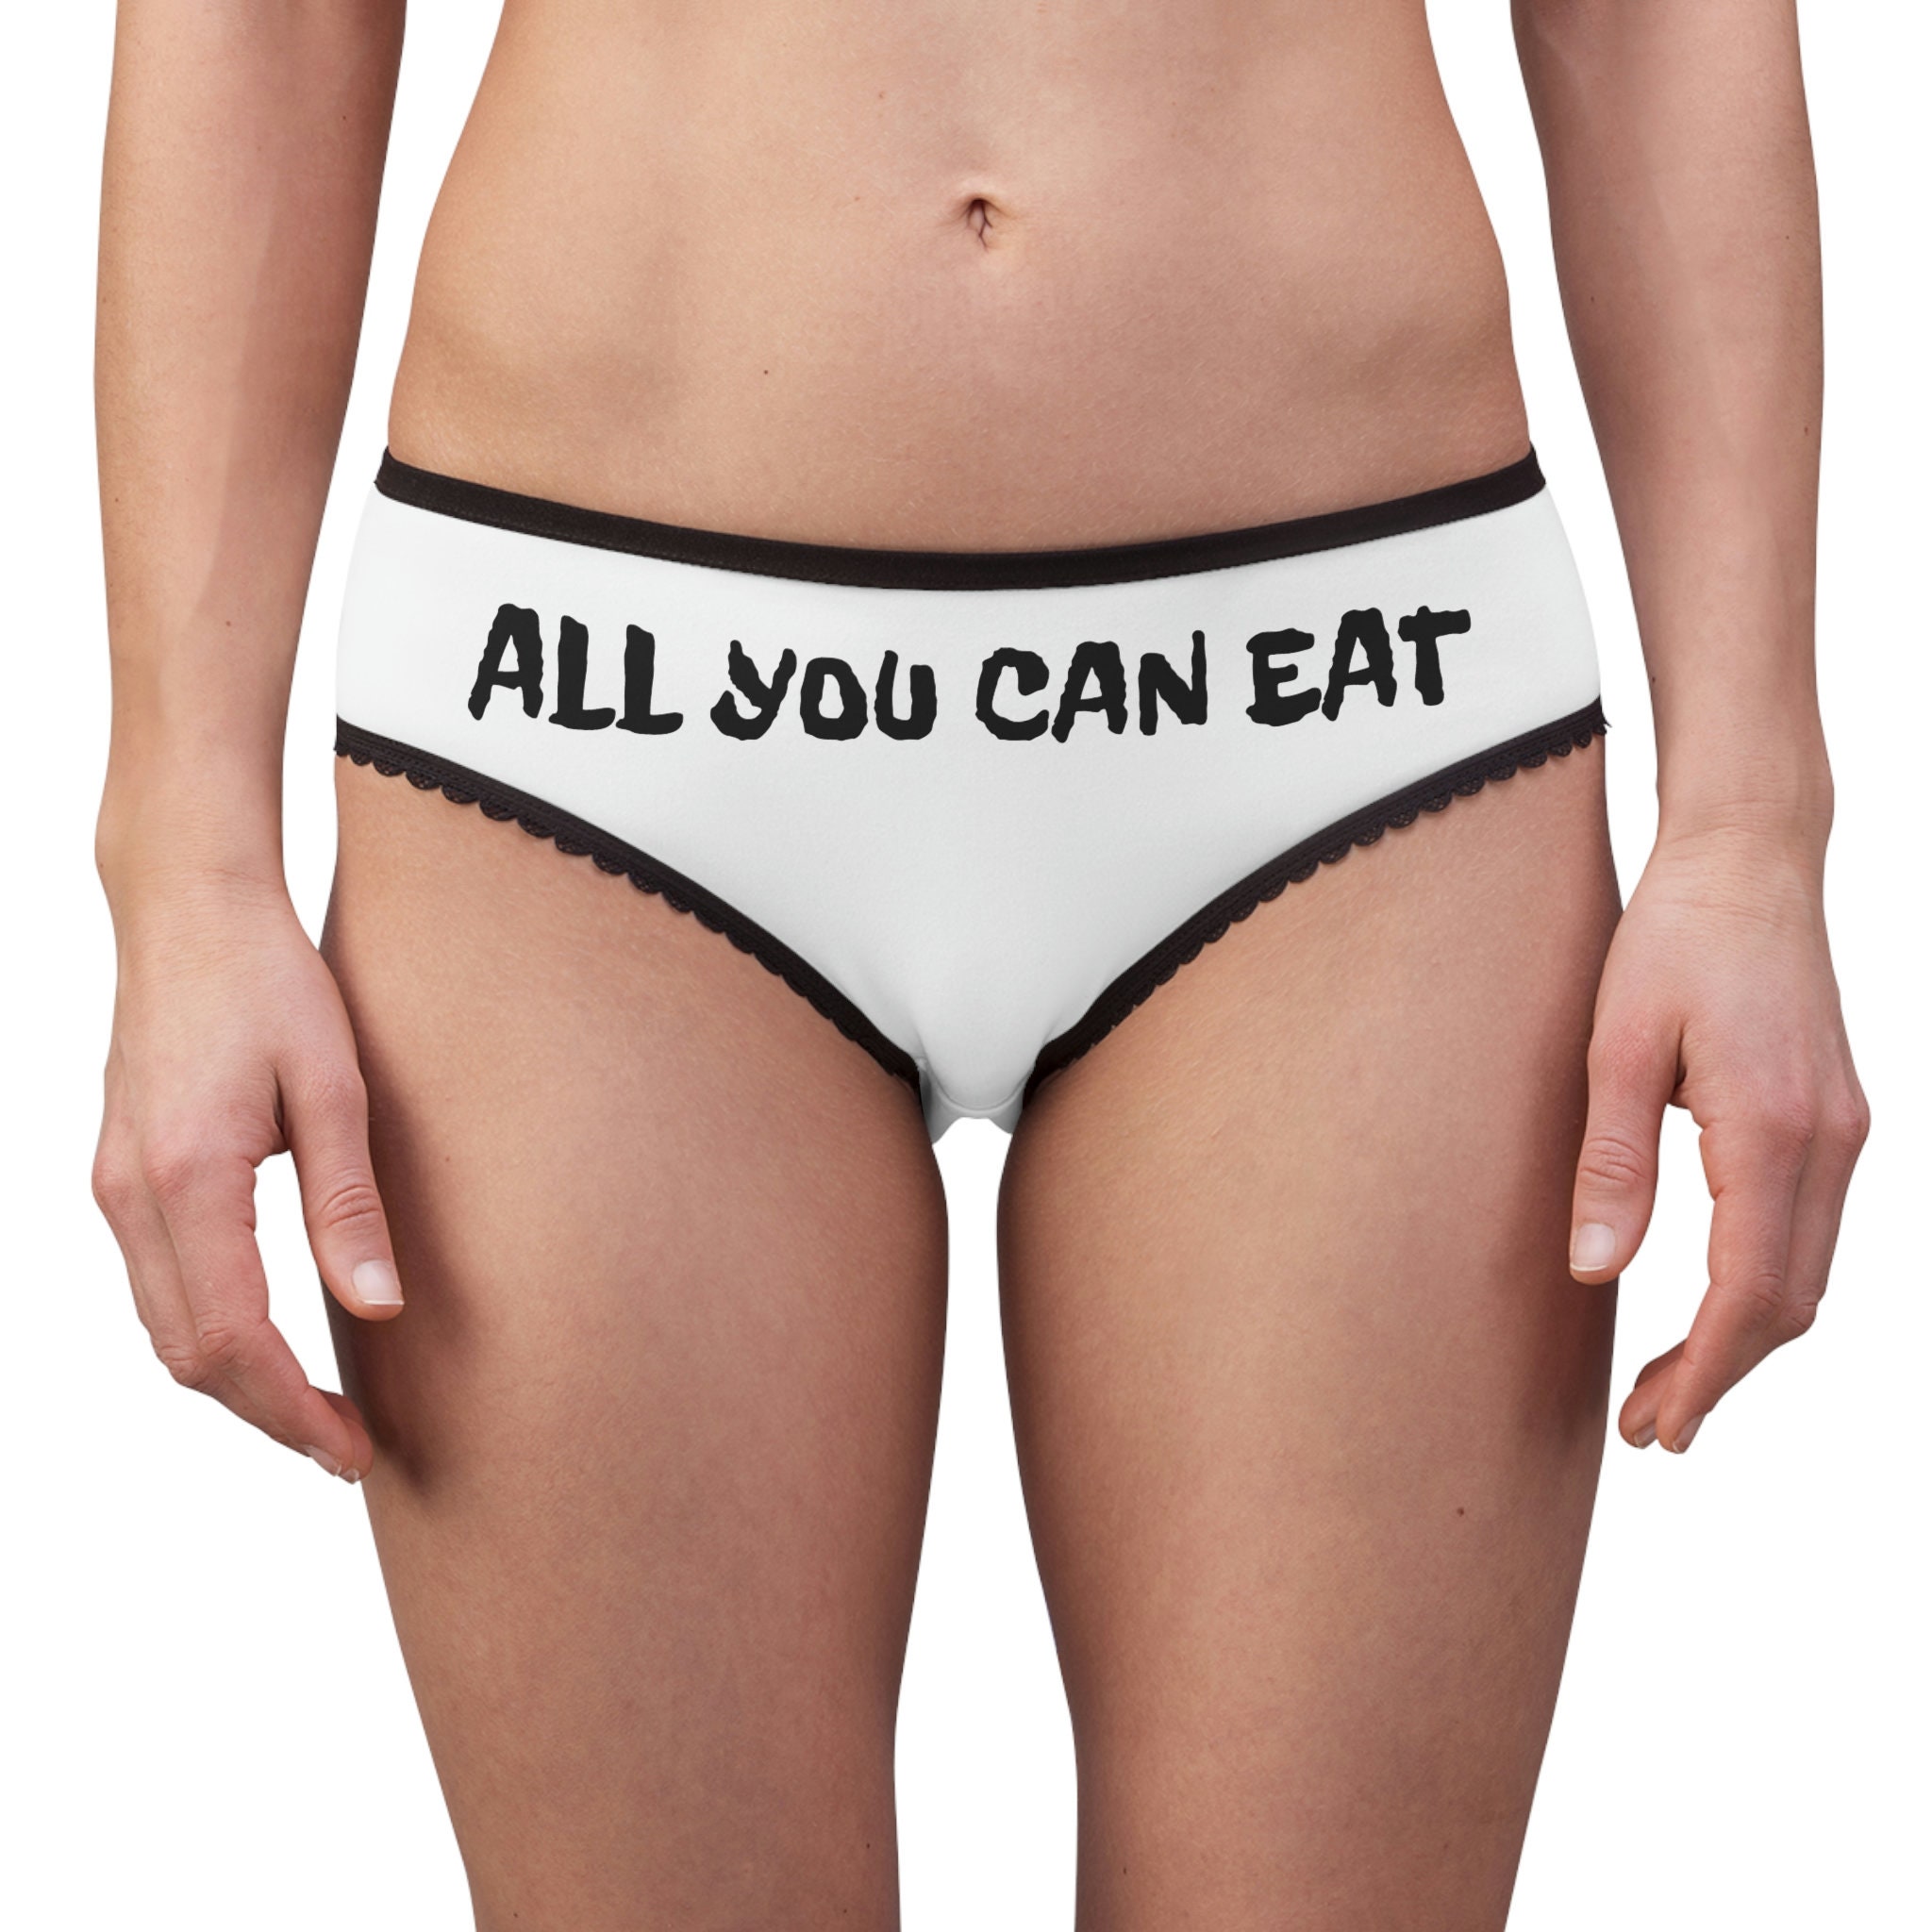 All You Can Eat Panties - All You Can Eat Panties - Etsy